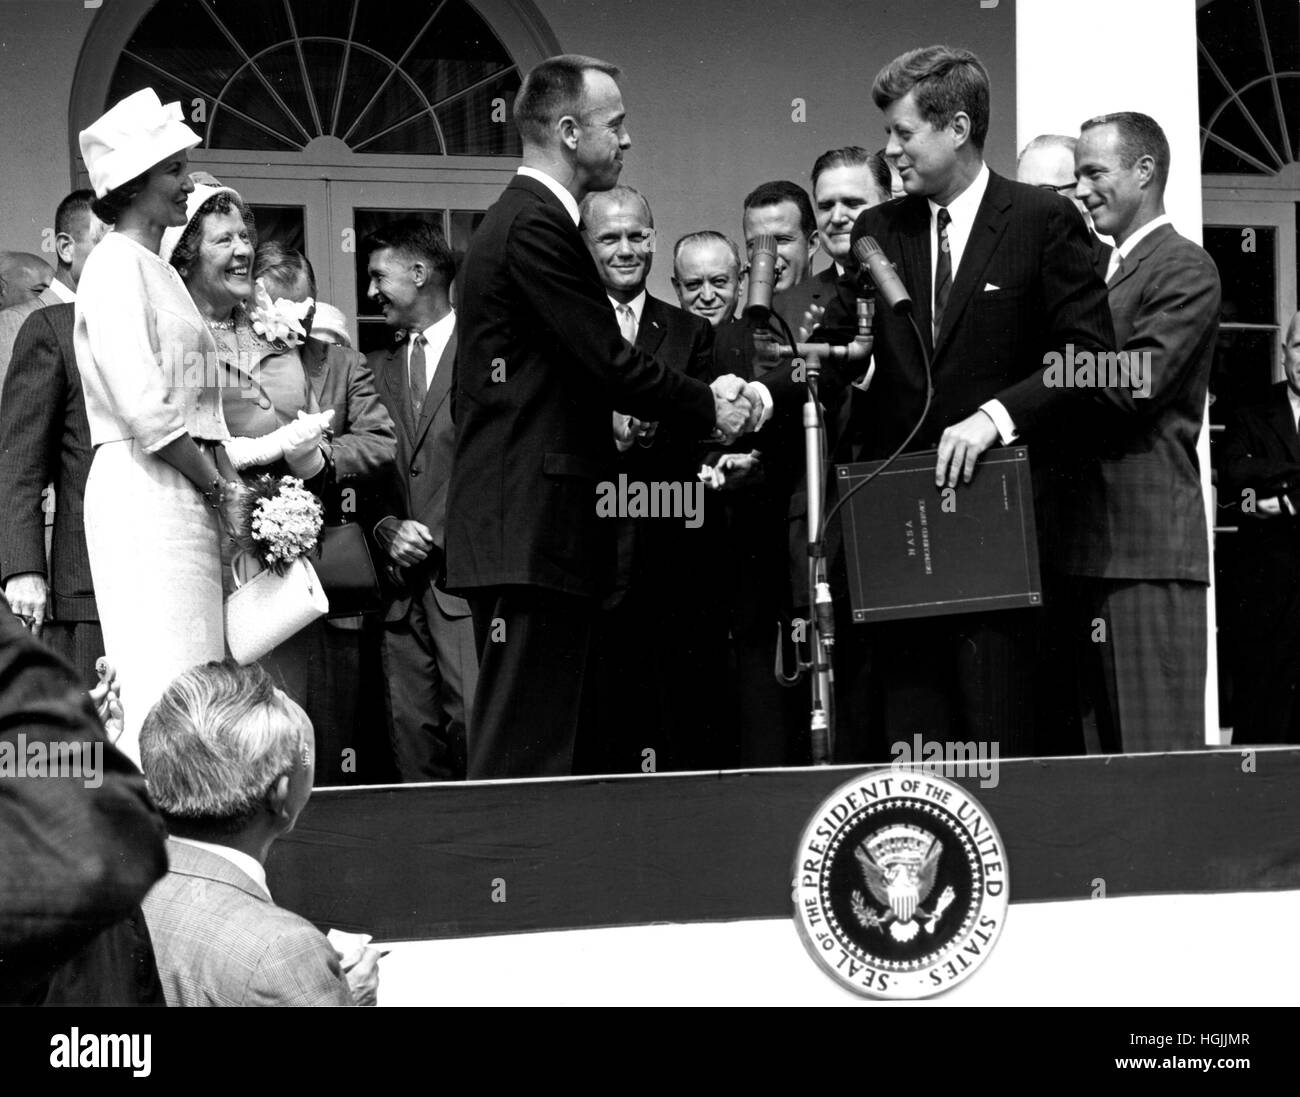 US-Präsident John F. Kennedy gratuliert Astronaut Alan B. Shepard, Jr., der erste Amerikaner im Weltall, auf seine historischen 5. Mai 1961 Ritt in die Freiheit 7-Sonde und stellt ihn mit der National Aeronautics and Space Administration (NASA) Distinguished Service Award in Washington, DC am 6. Mai 1961. Shepards Frau, Louise (links im weißen Kleid und Hut) und seine Mutter waren in Anwesenheit, sowie die anderen sechs Mercury Astronauten, darunter Oberst John H. Glenn, Jr. und anderen NASA-Funktionäre, einige im Hintergrund sichtbar. Credit: NASA mittels CNP - kein Draht-SERVICE - Foto: N Stockfoto